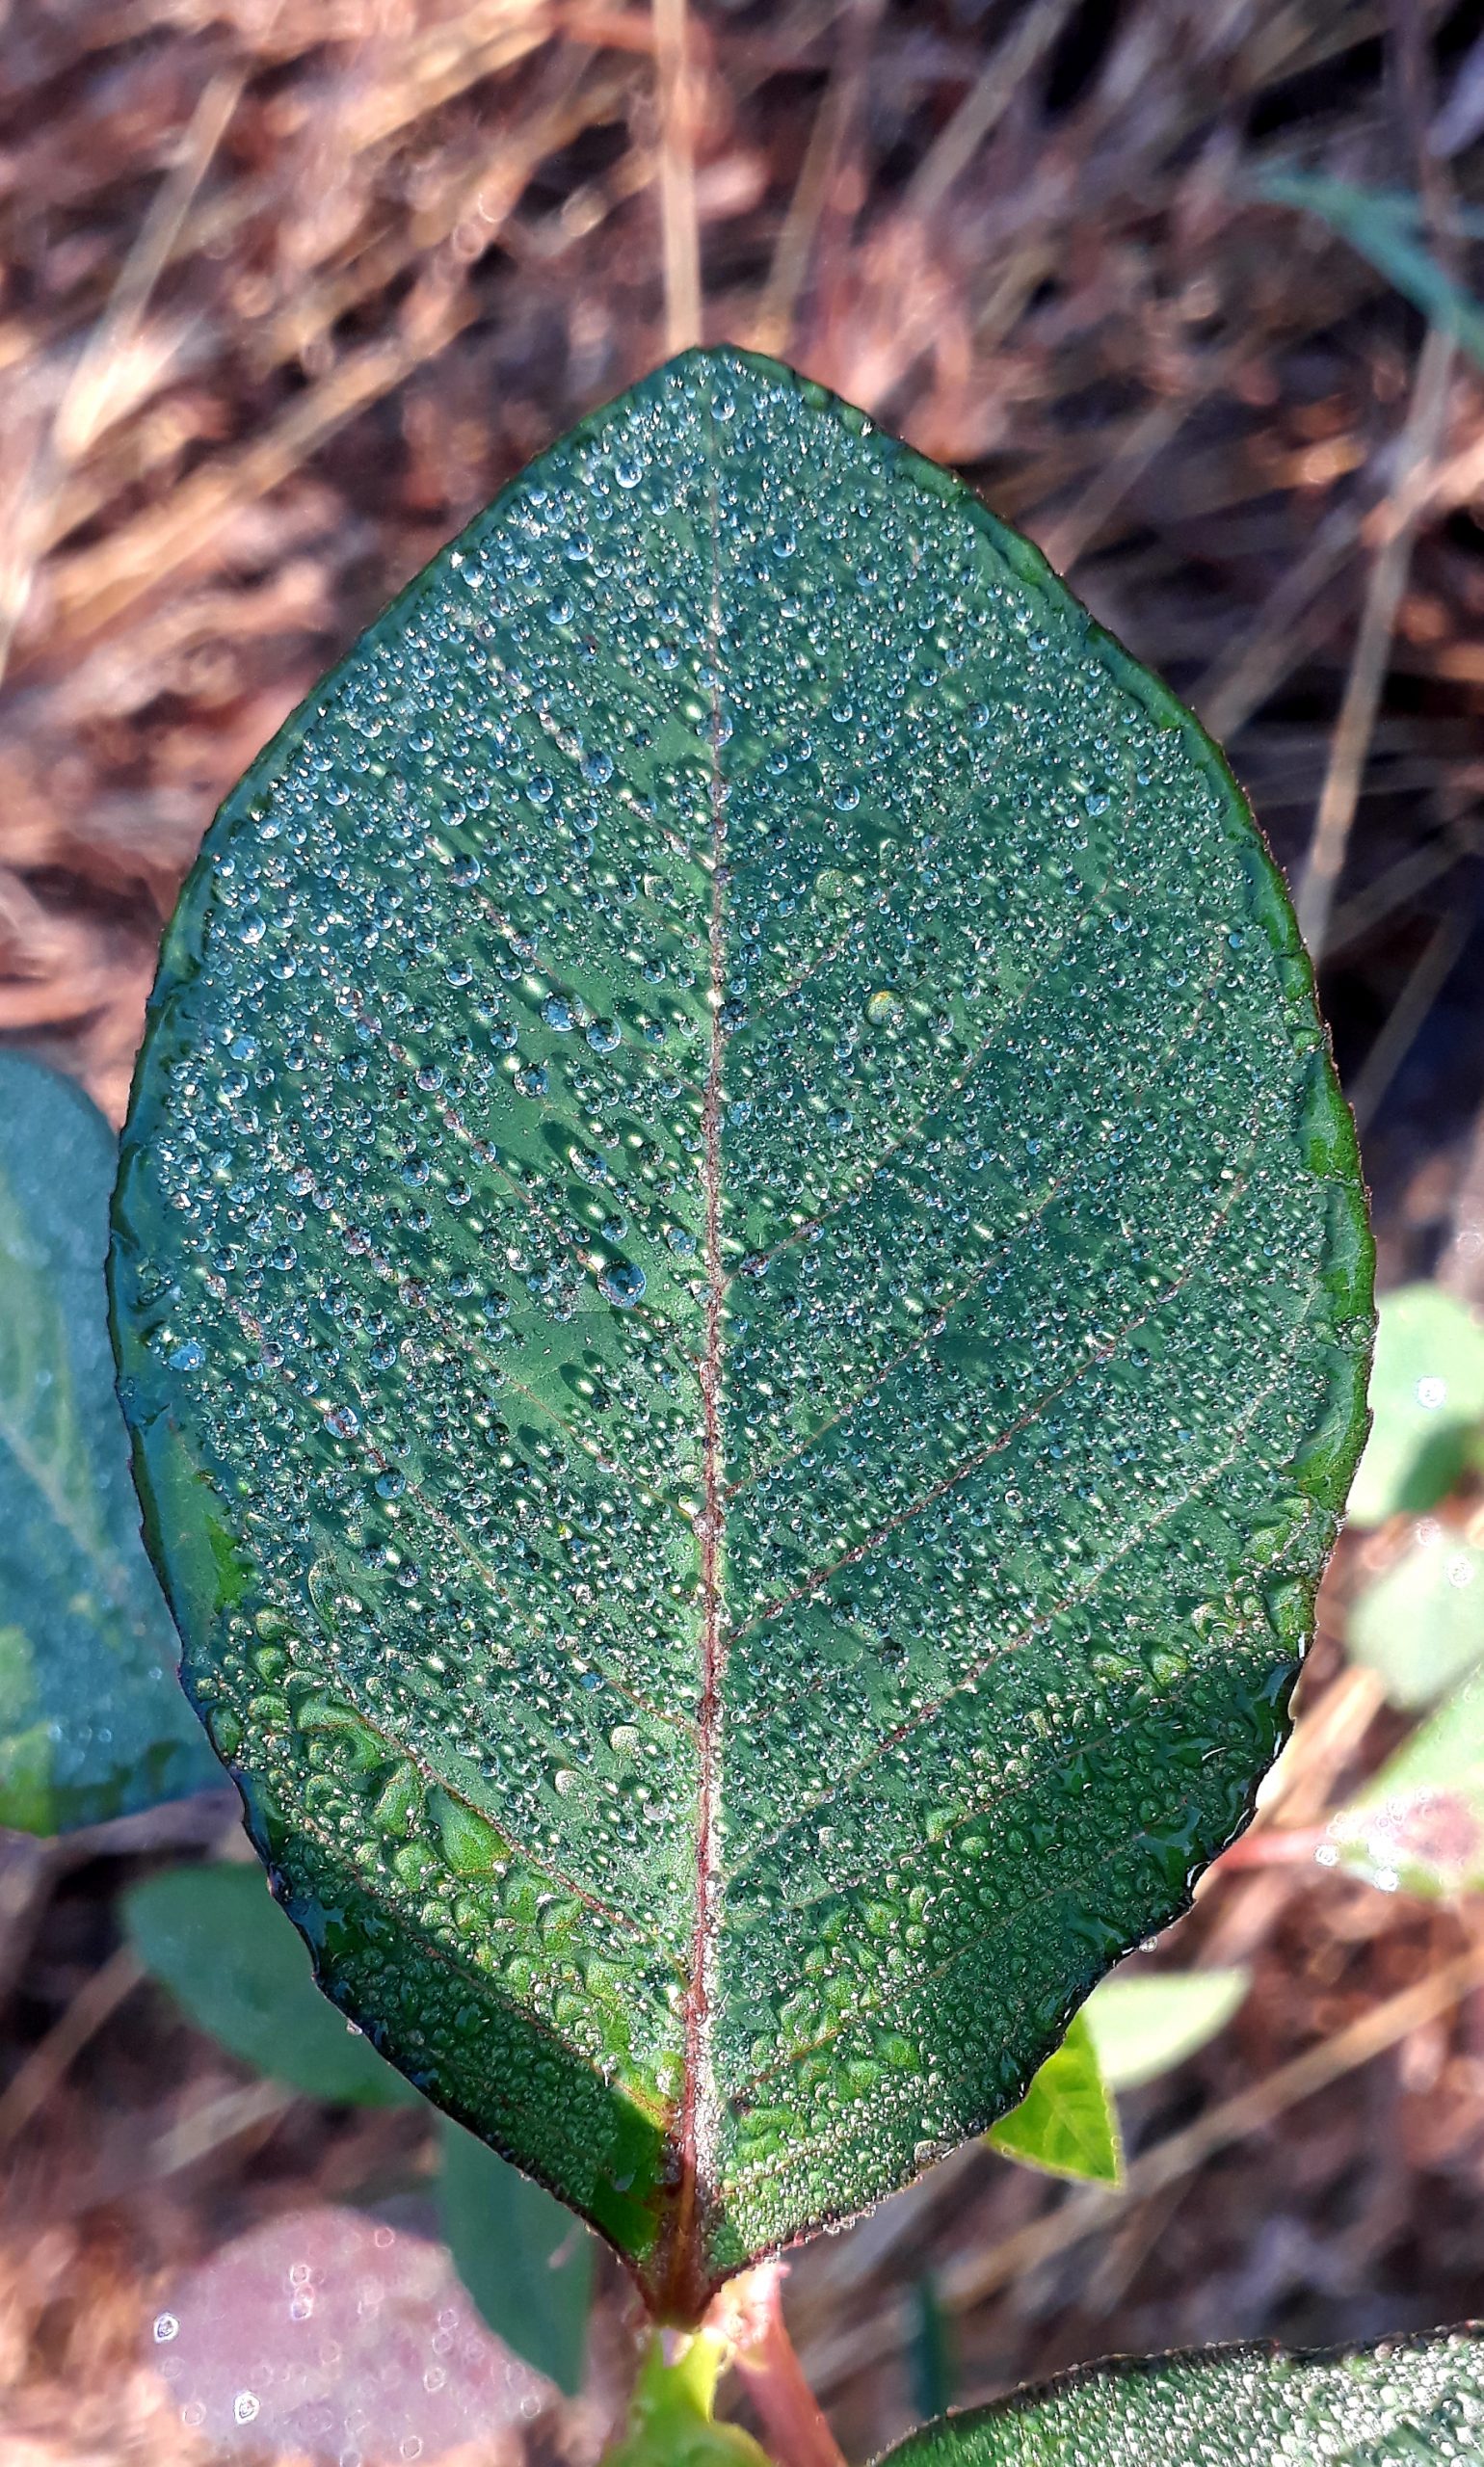 Dew on plant leaf